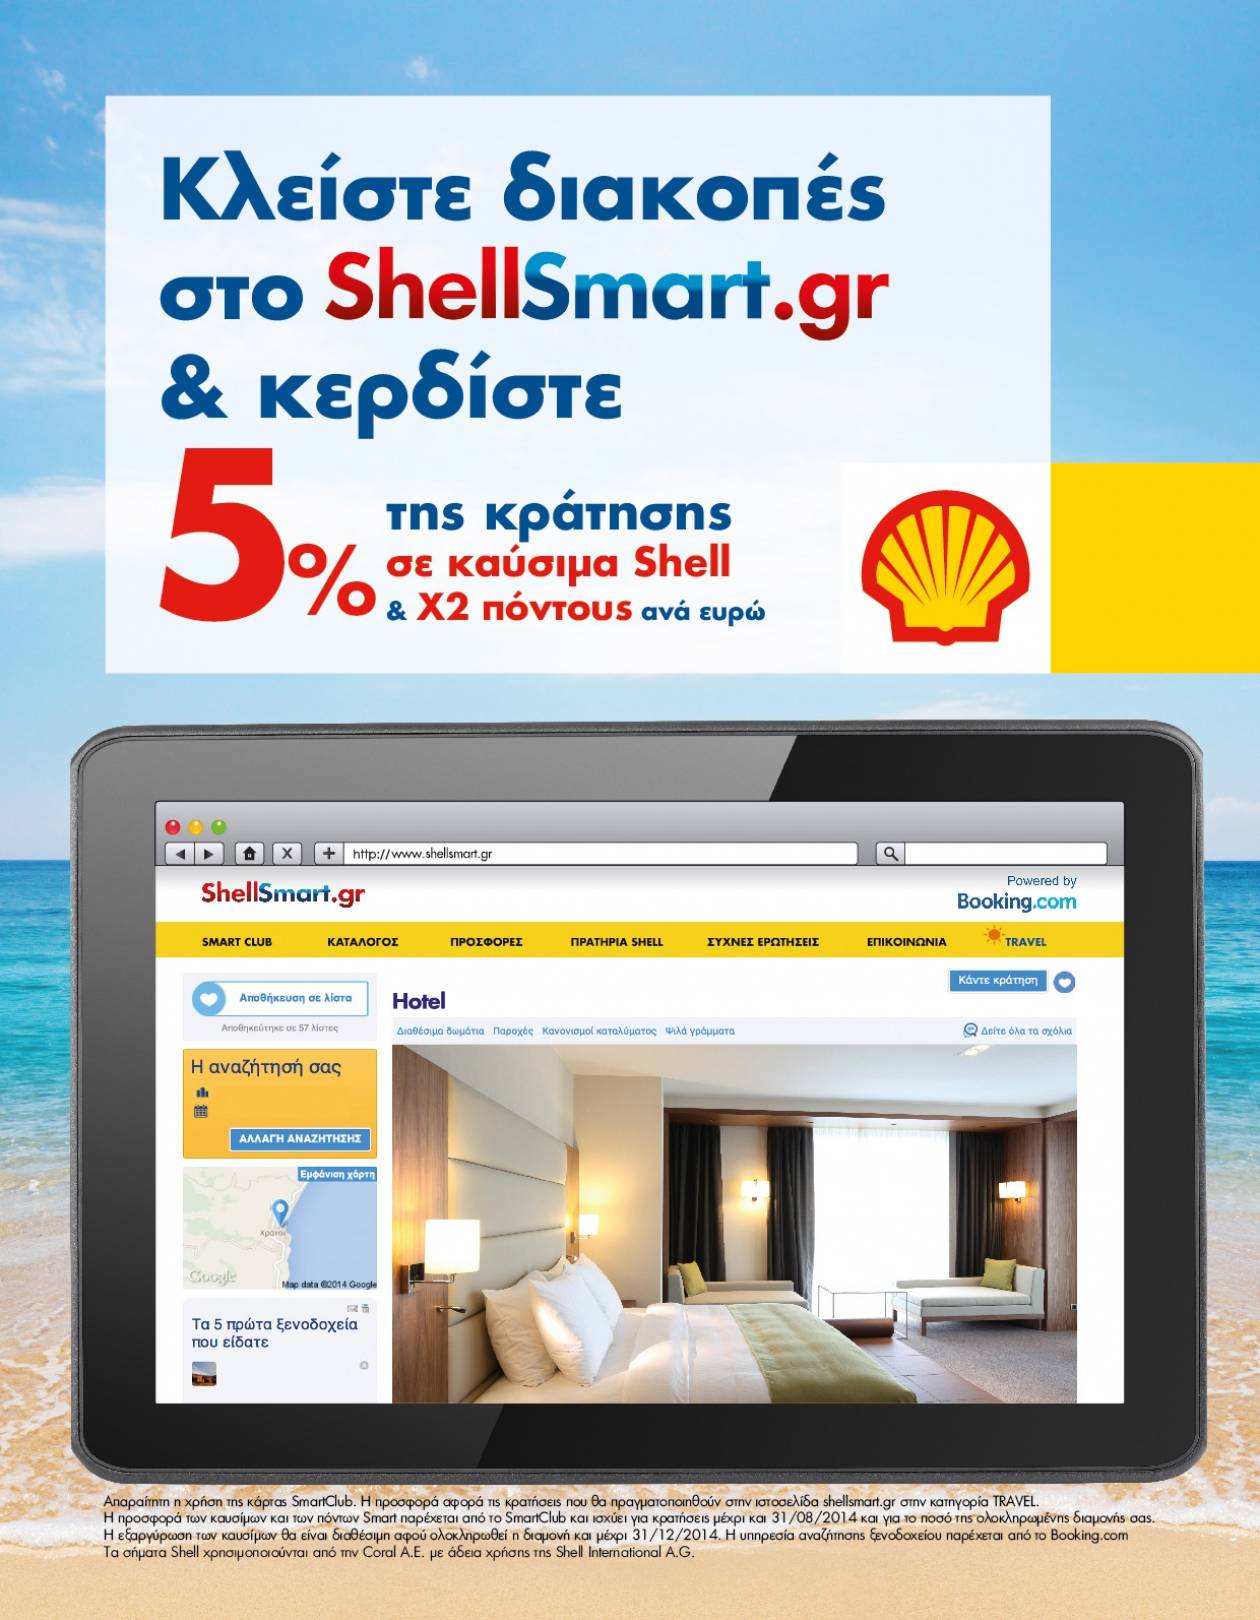 Φέτος το καλοκαίρι με το ShellSmart.gr κλείνετε διακοπές… κερδίζετε διαδρομές!